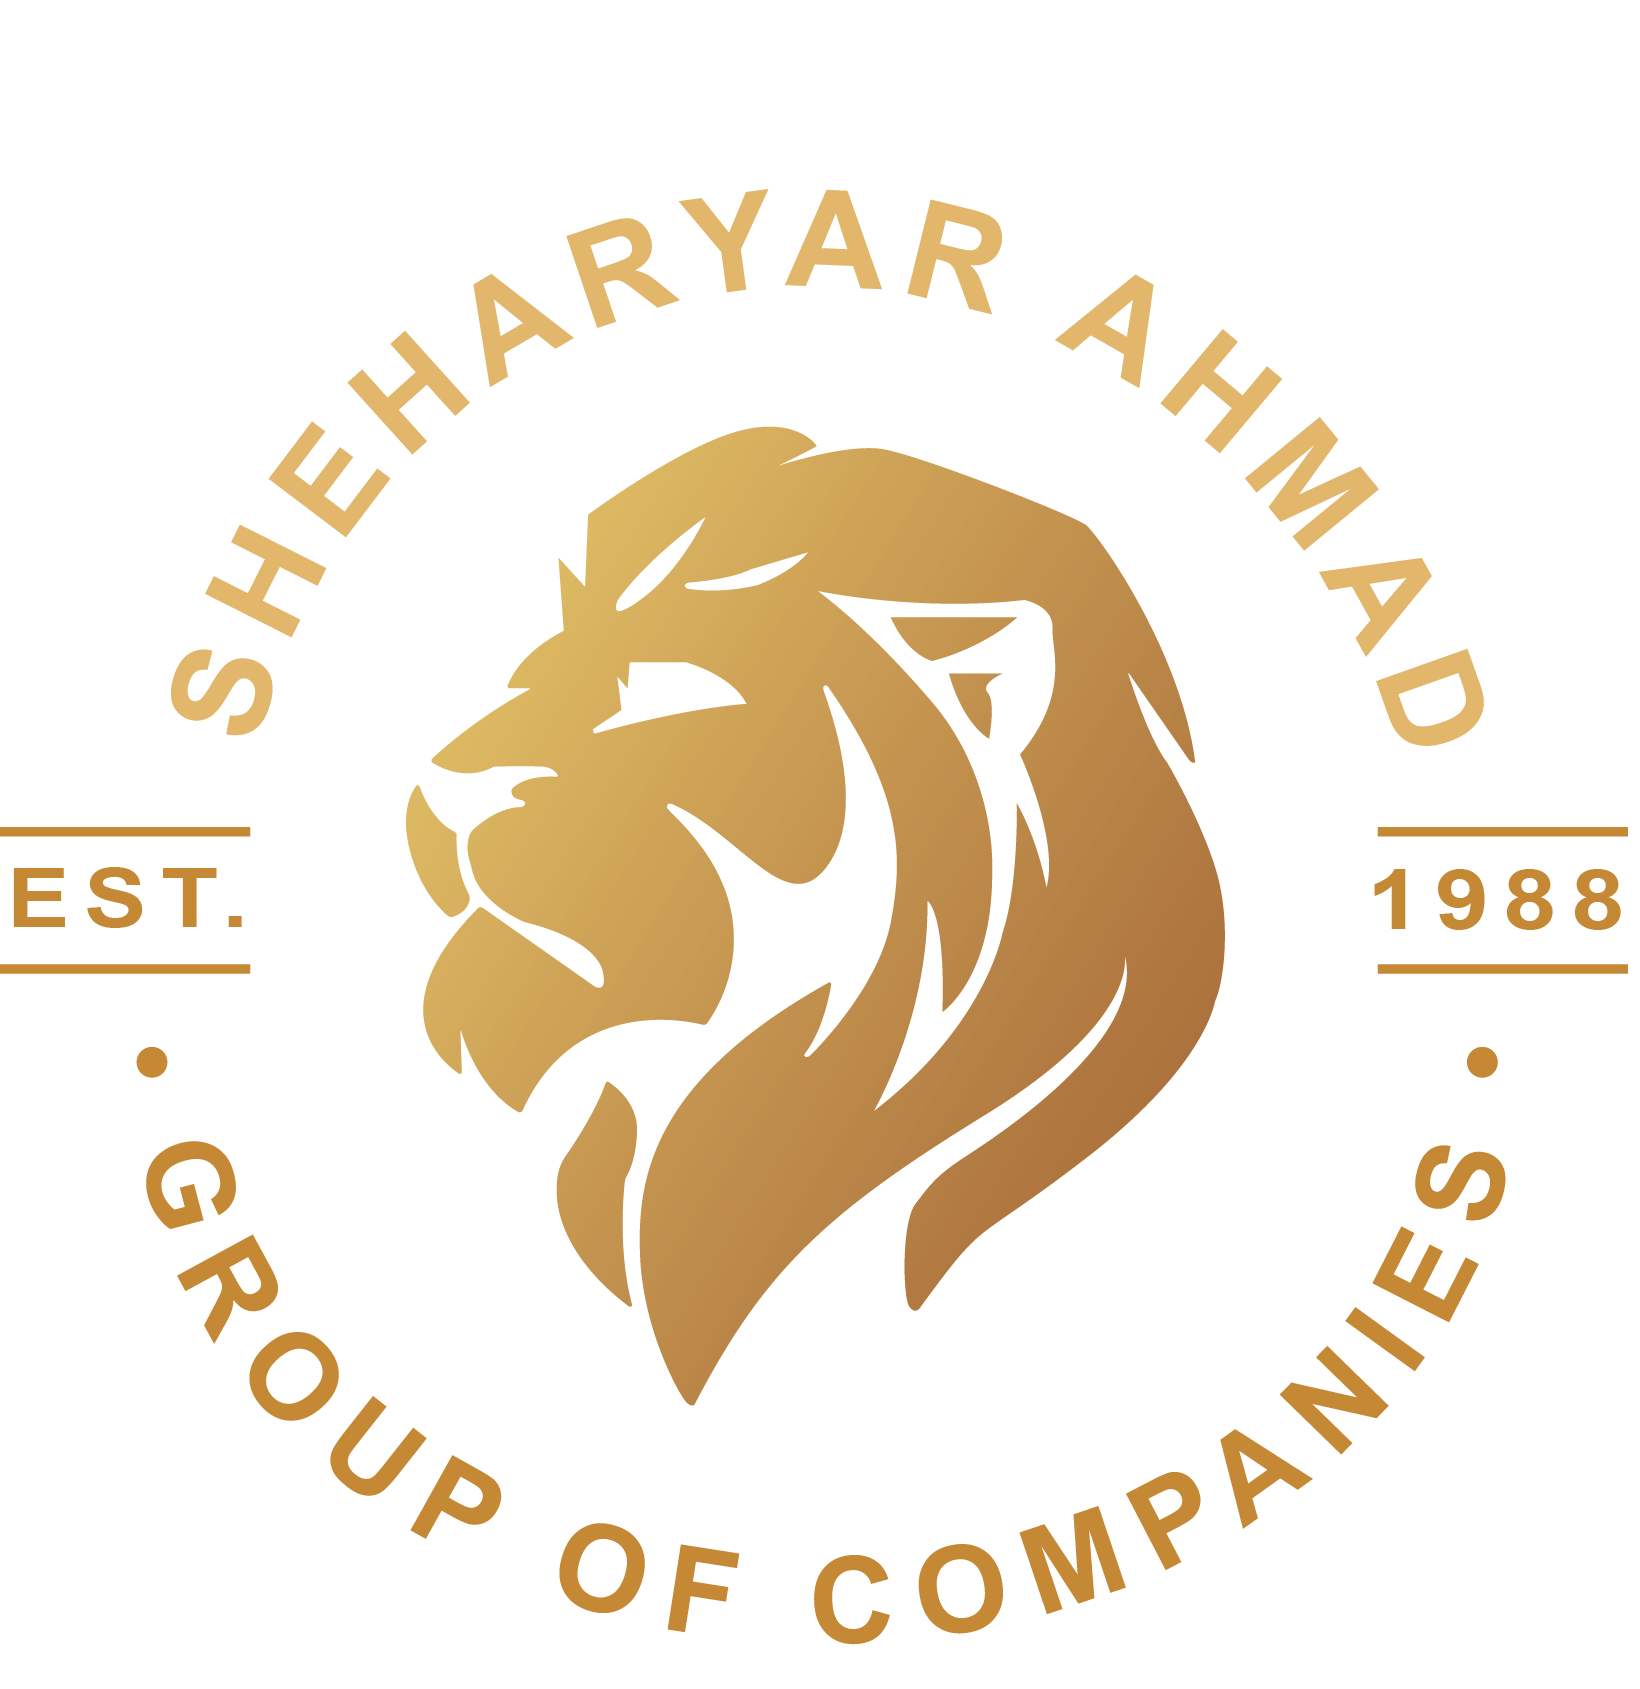 Sheharyar Ahmad Group Of Companies